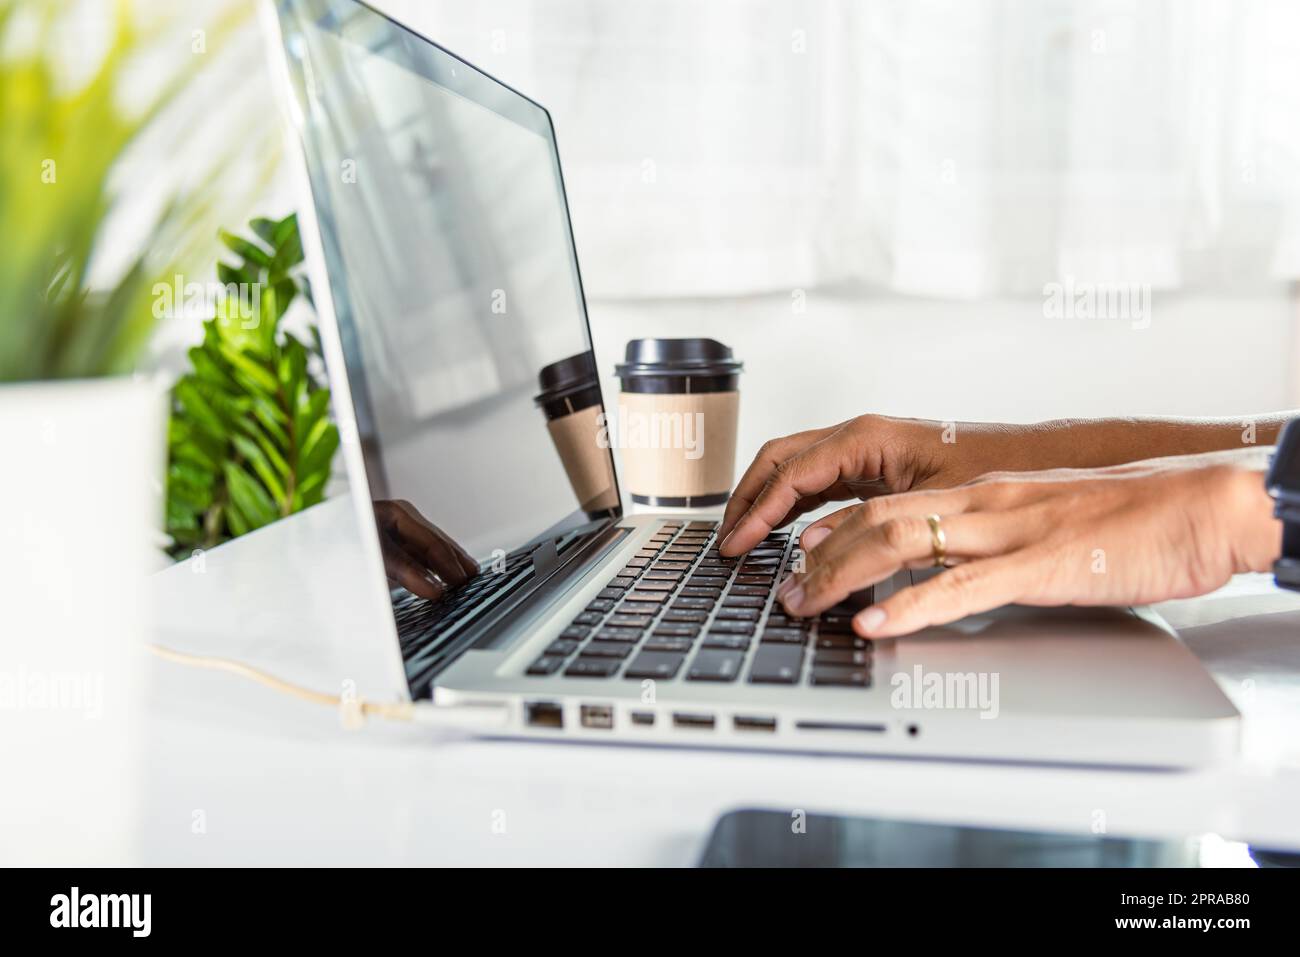 Rapprochez-vous des mains d'une femme d'affaires au-dessus du clavier d'un ordinateur portable pendant le travail au bureau Banque D'Images